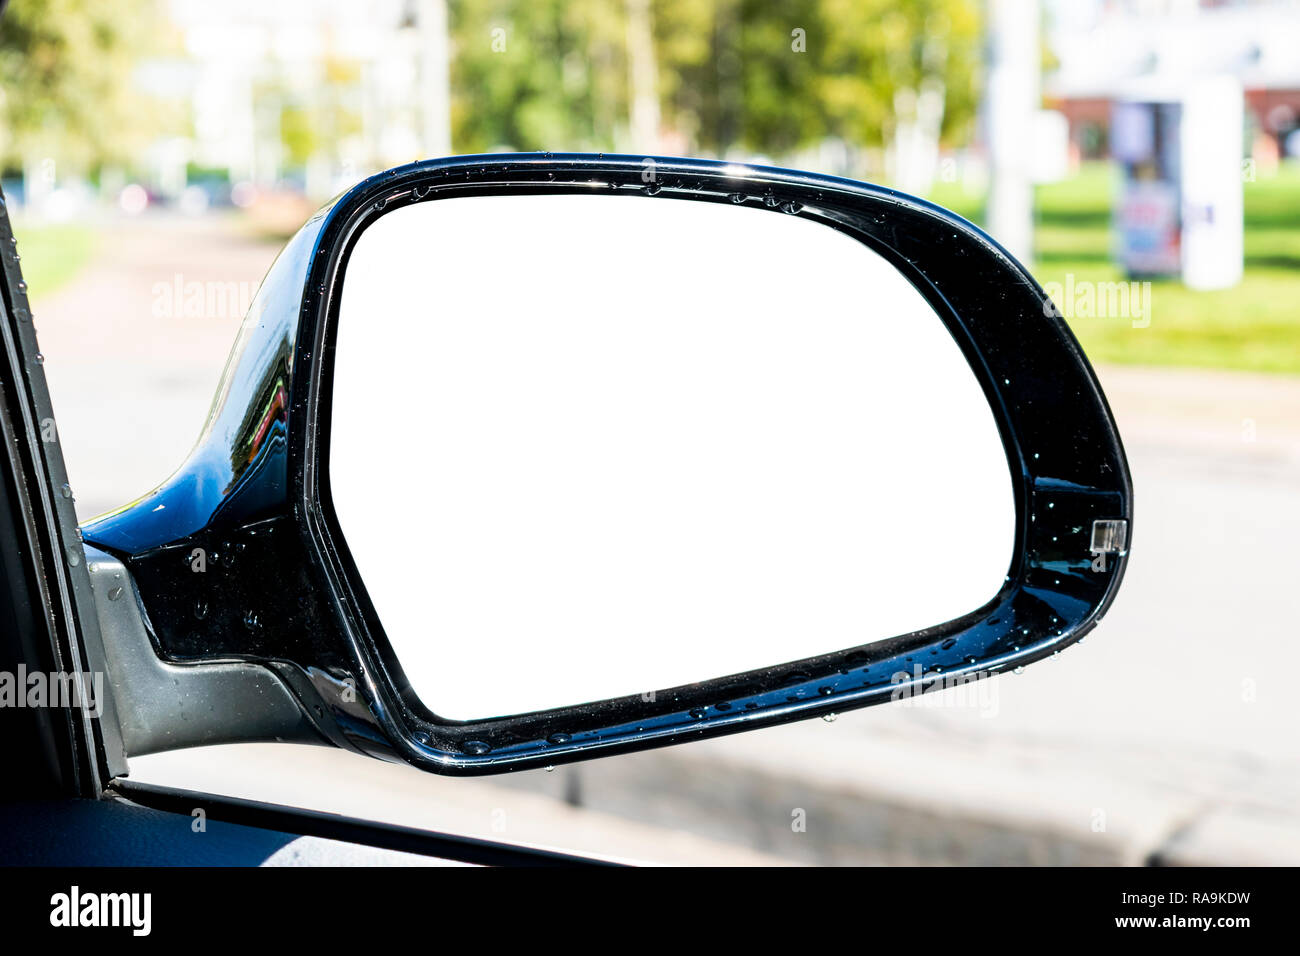 Leer, leeres Bild Rückspiegel auto Spiegel. Leere Rückspiegel mit